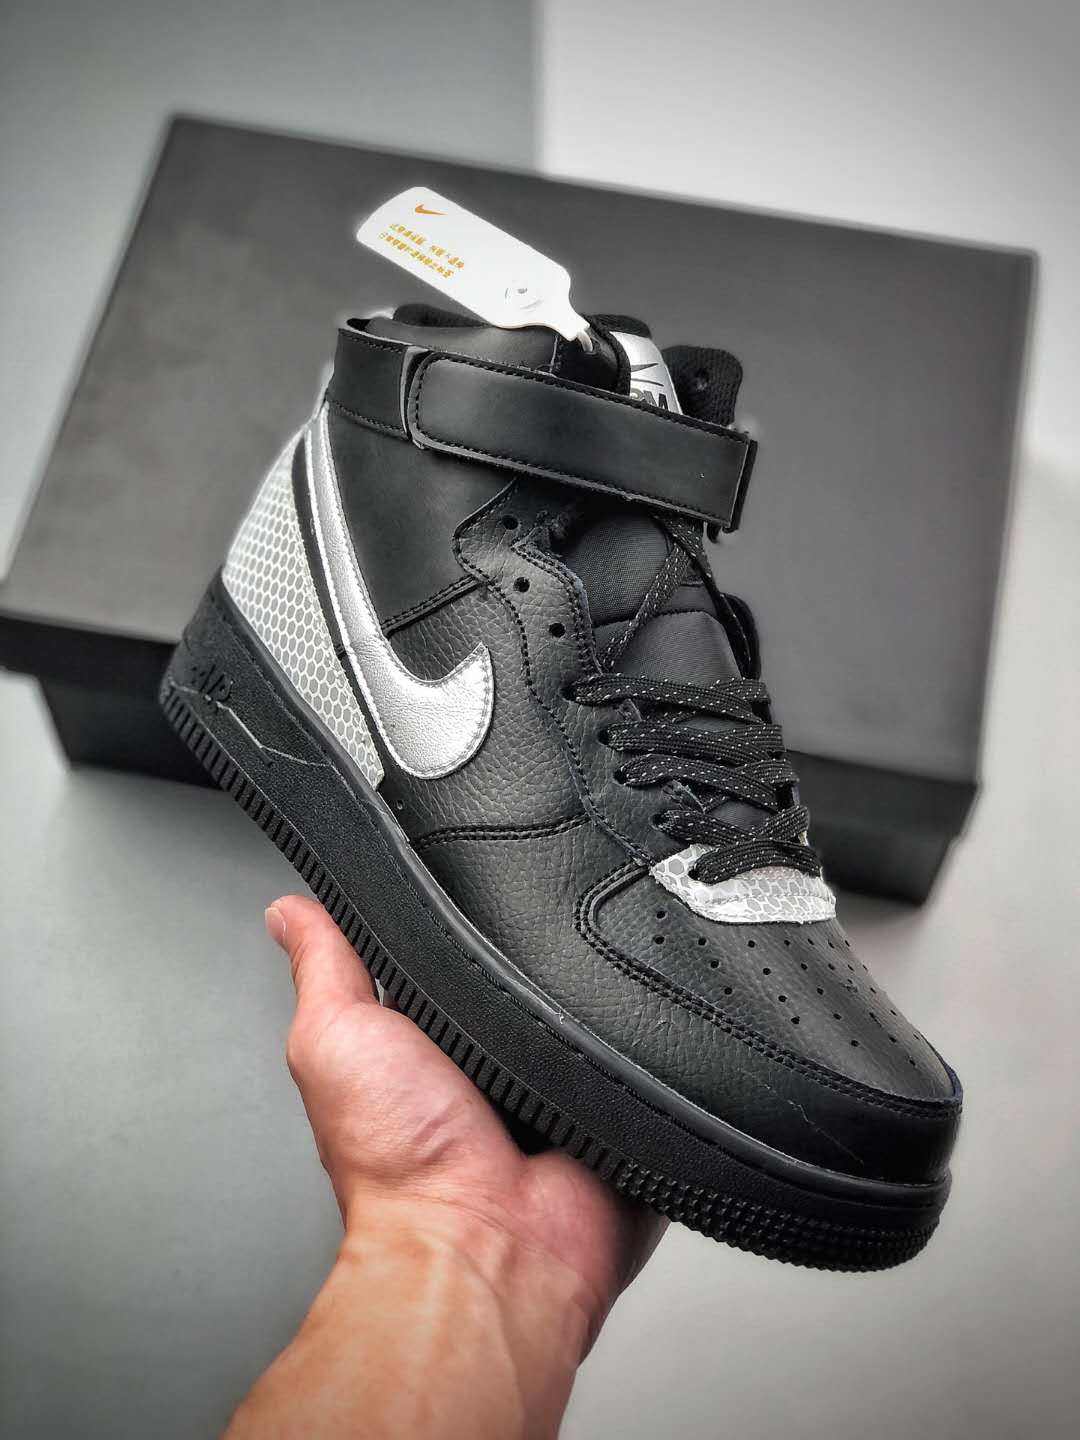 Nike 3M x Air Force 1 High 'Black' CU4159-001 – Shop the Sleek & Stylish Sneakers!